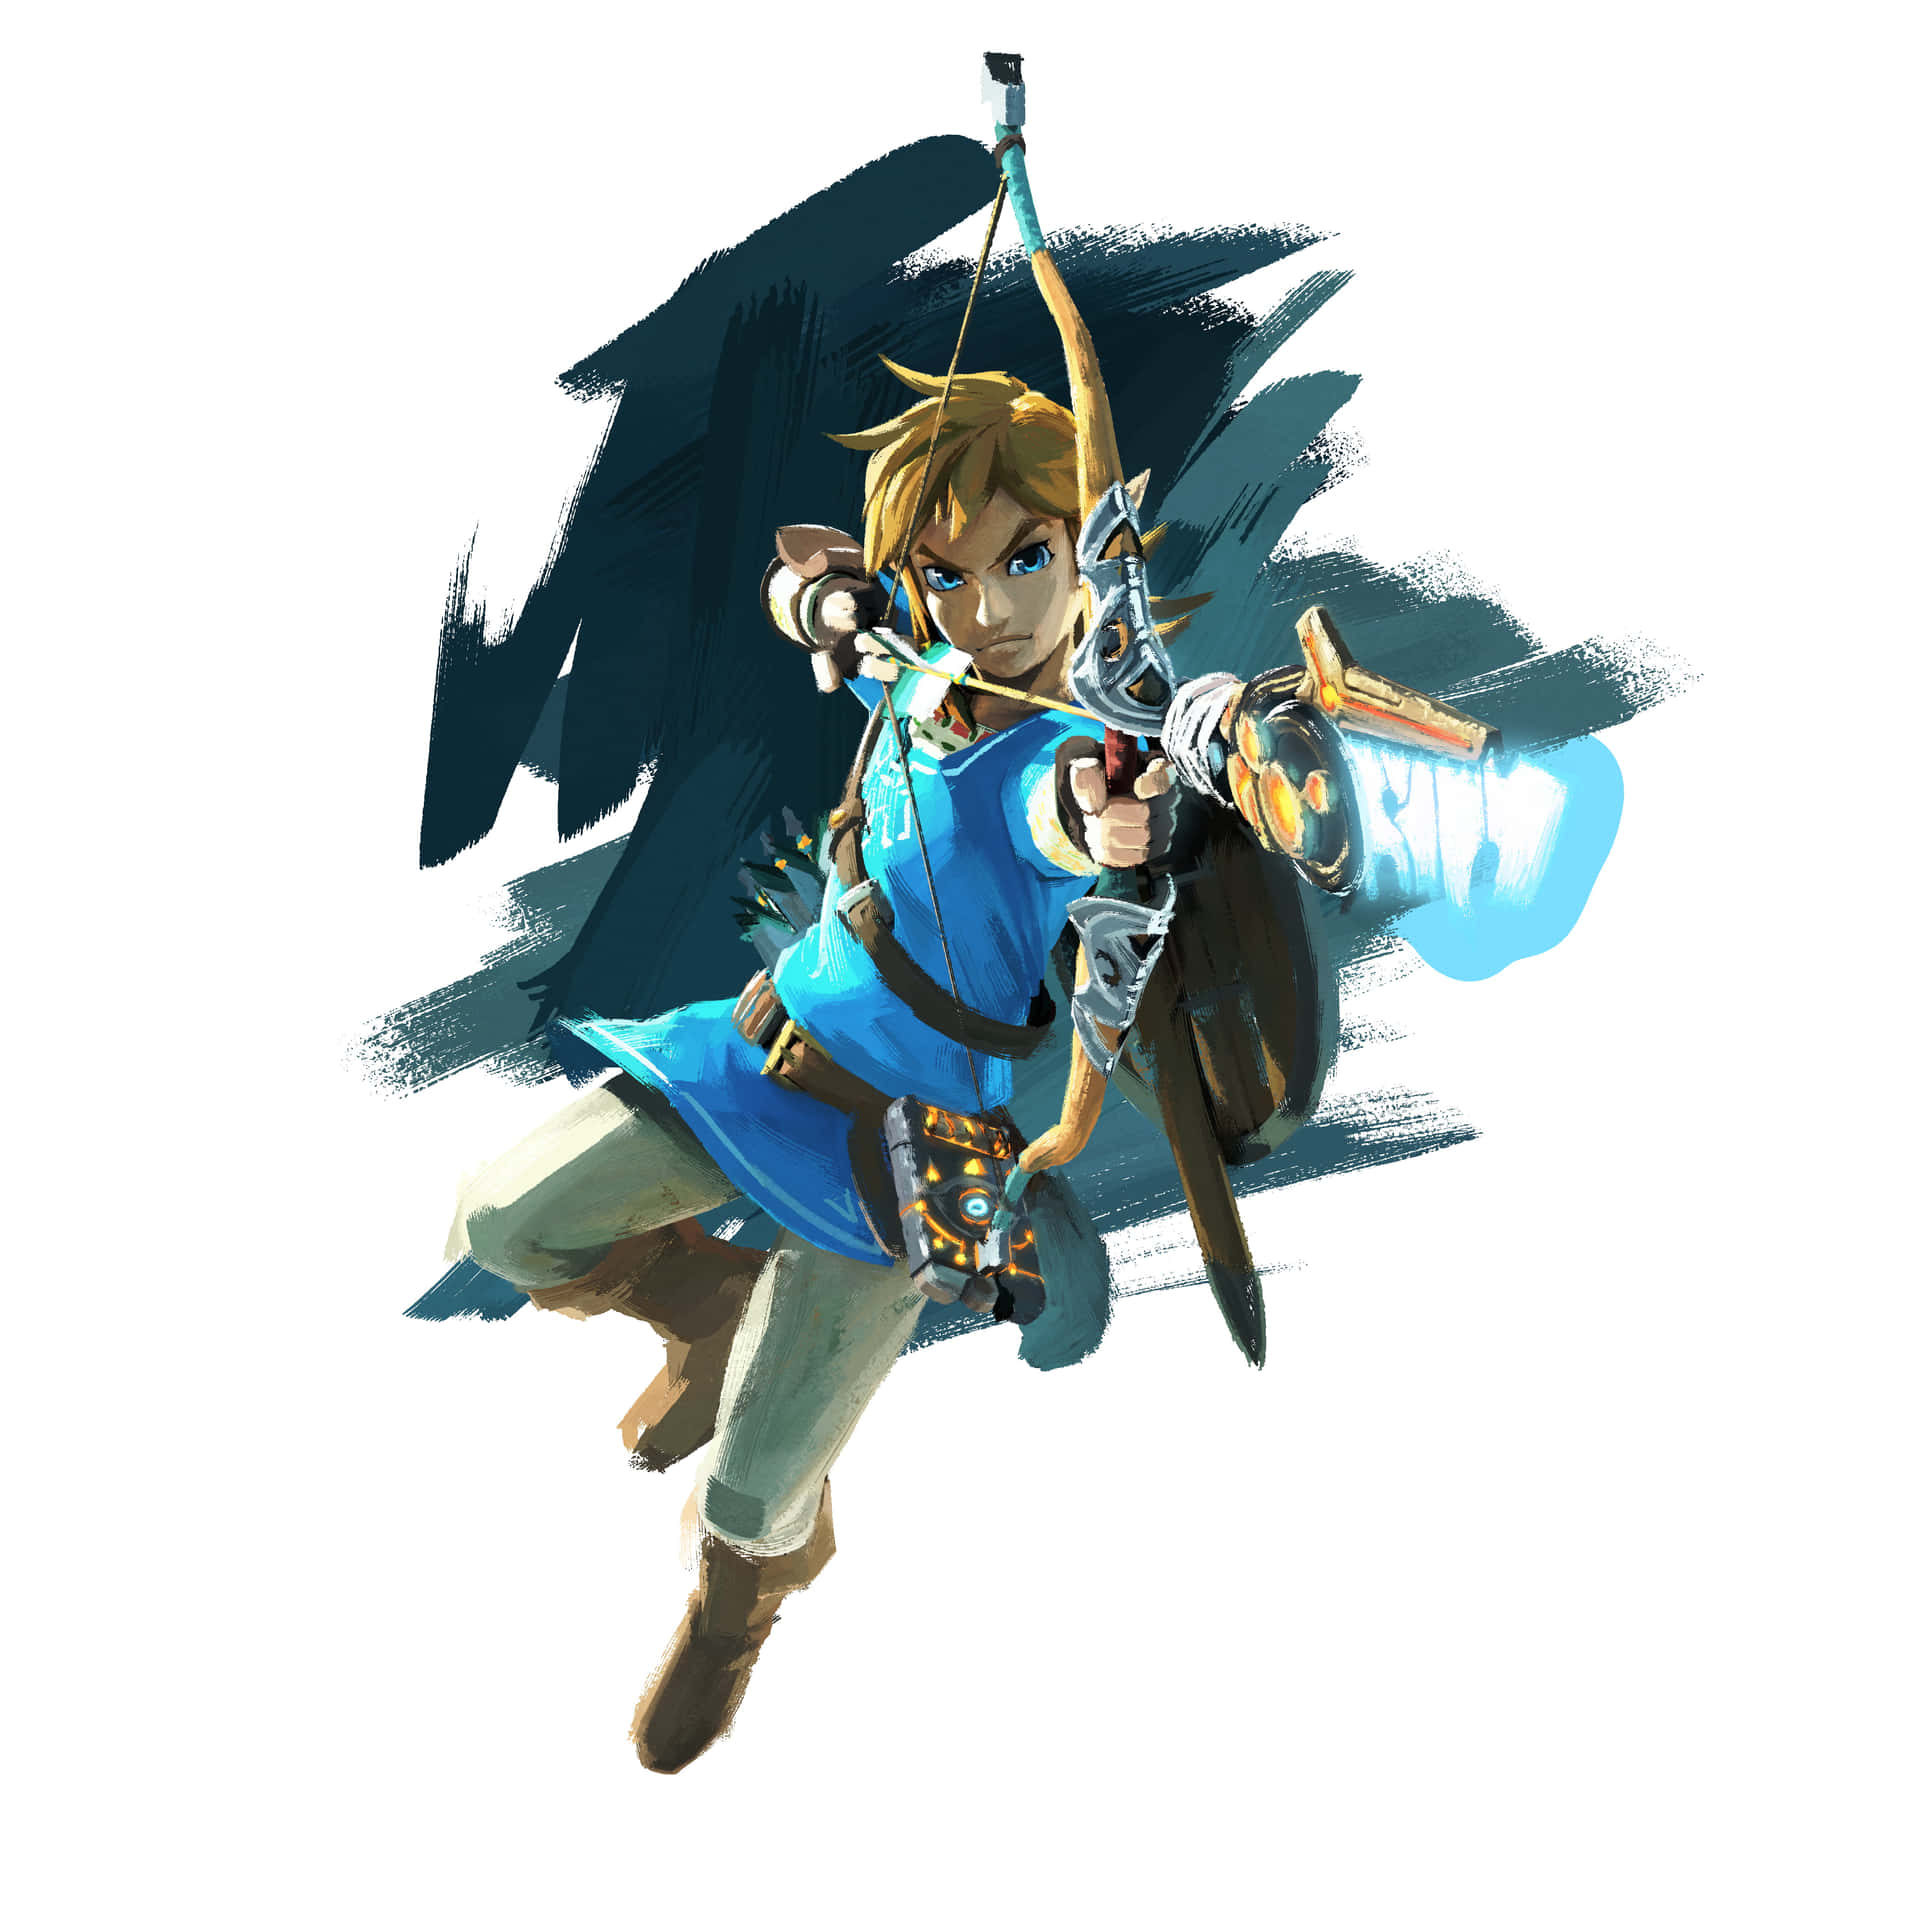 Linke La Principessa Zelda Combattendo Con Coraggio E Forza.